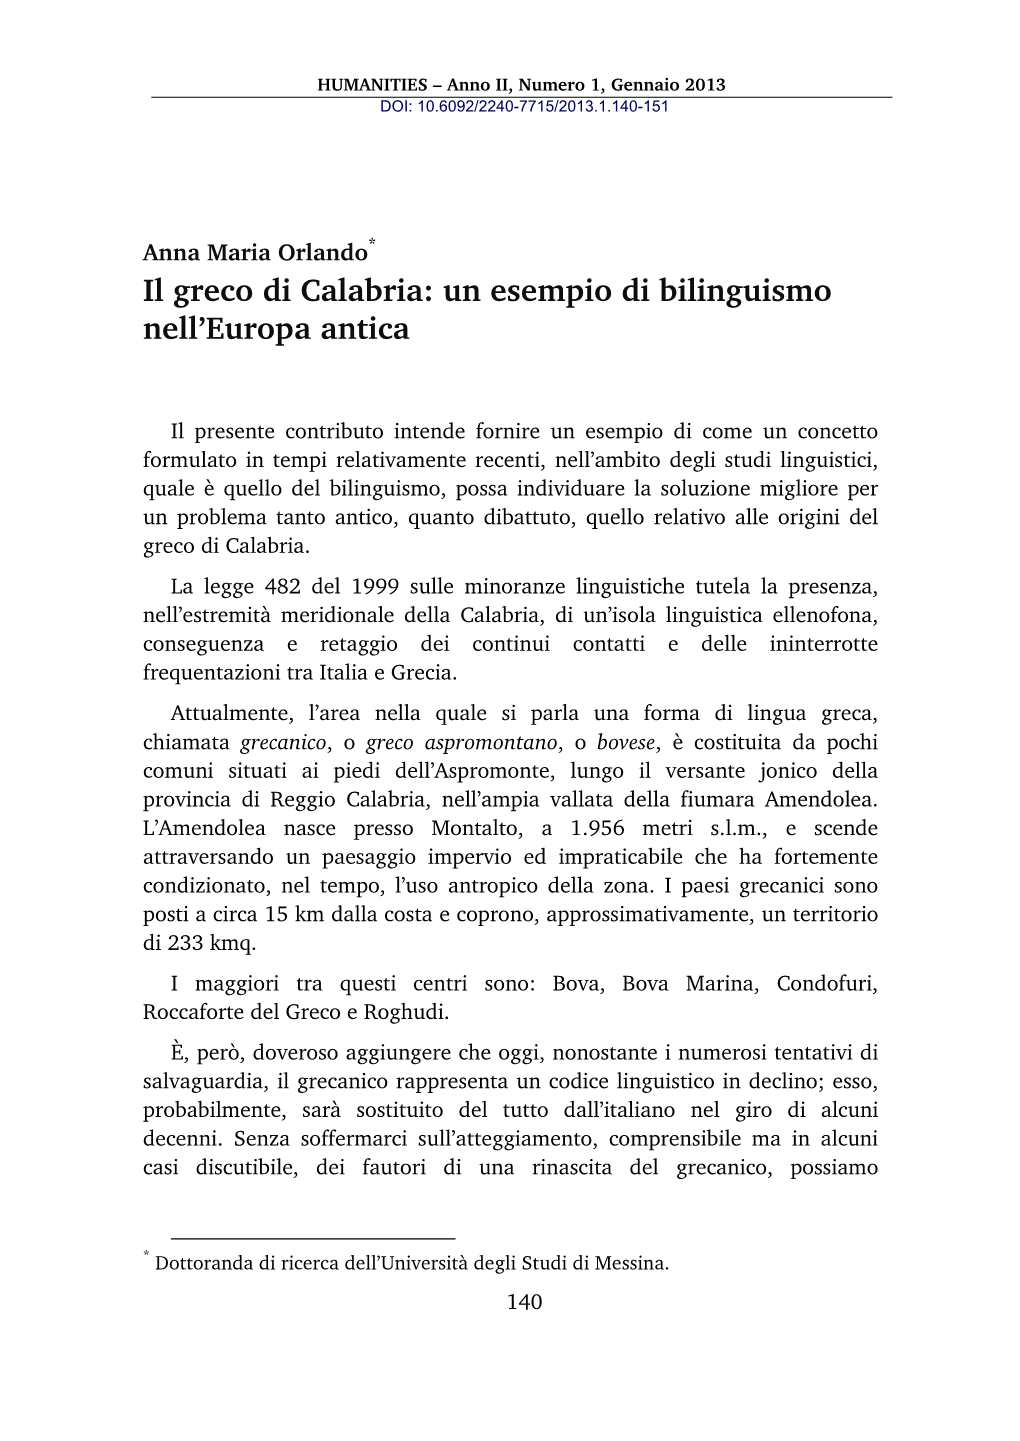 Il Greco Di Calabria: Un Esempio Di Bilinguismo Nell'europa Antica